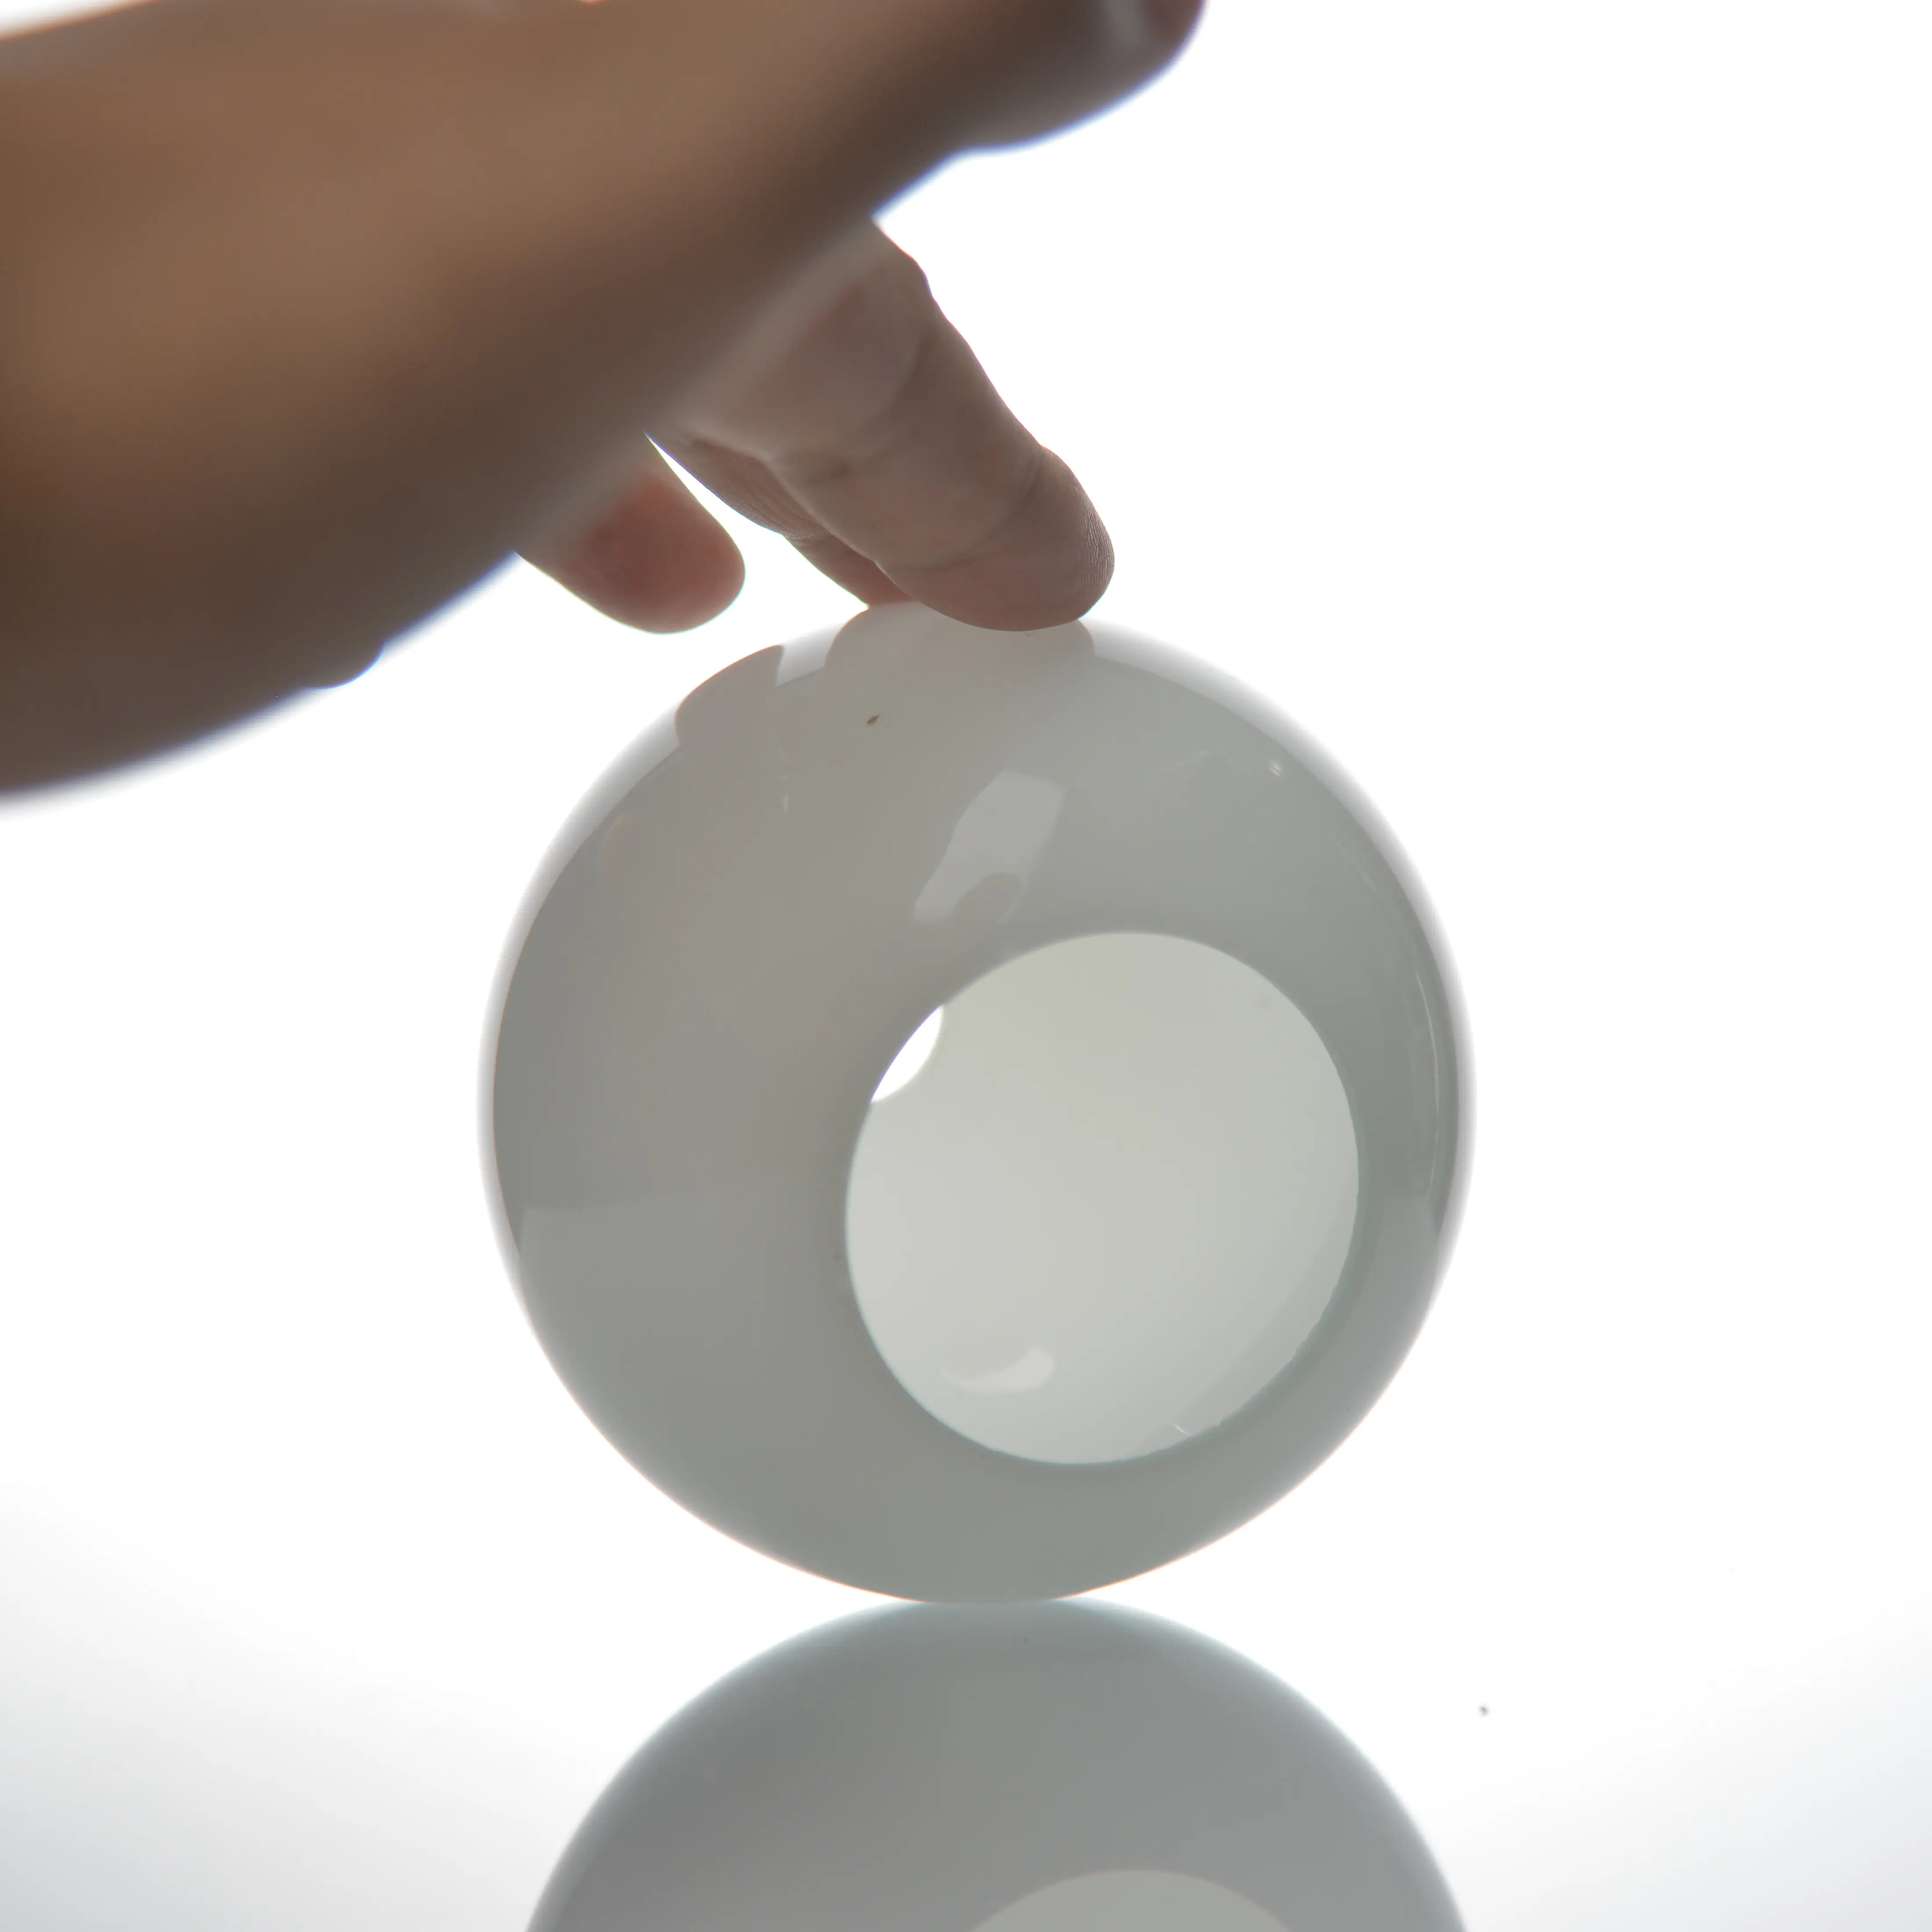 الشركة المصنعة نفخ يدوي مخصص زجاج بلوري عاكس الضوء نصف قبة 12 قطر زجاج عاكس الضوء كرة بيضاء للمصابيح مع G9